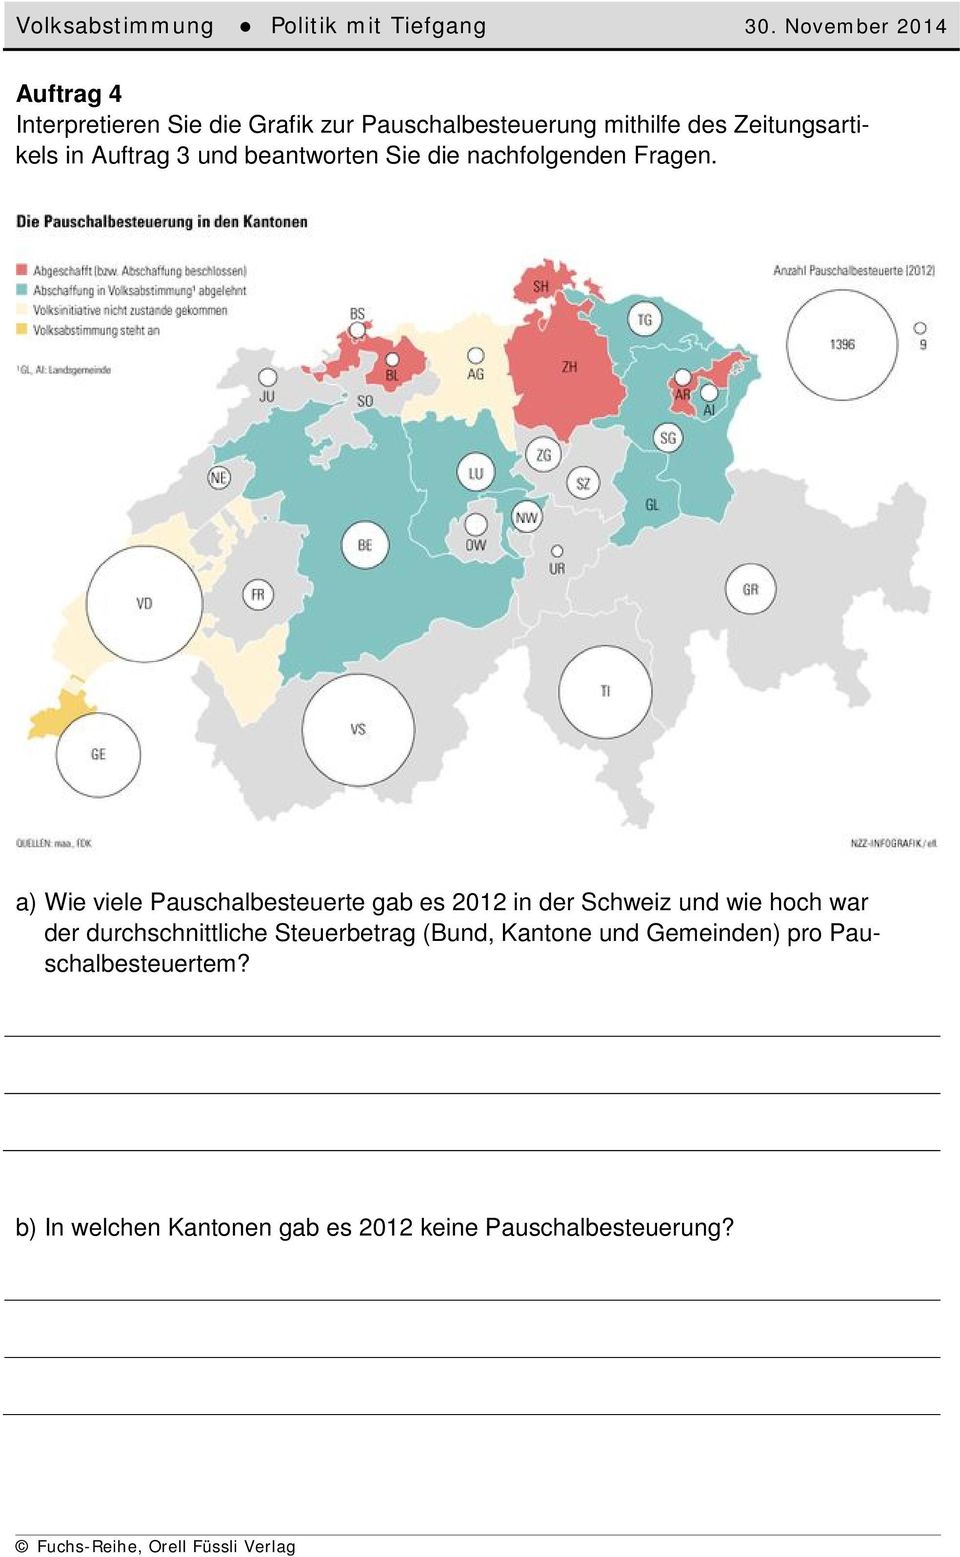 a) Wie viele Pauschalbesteuerte gab es 2012 in der Schweiz und wie hoch war der